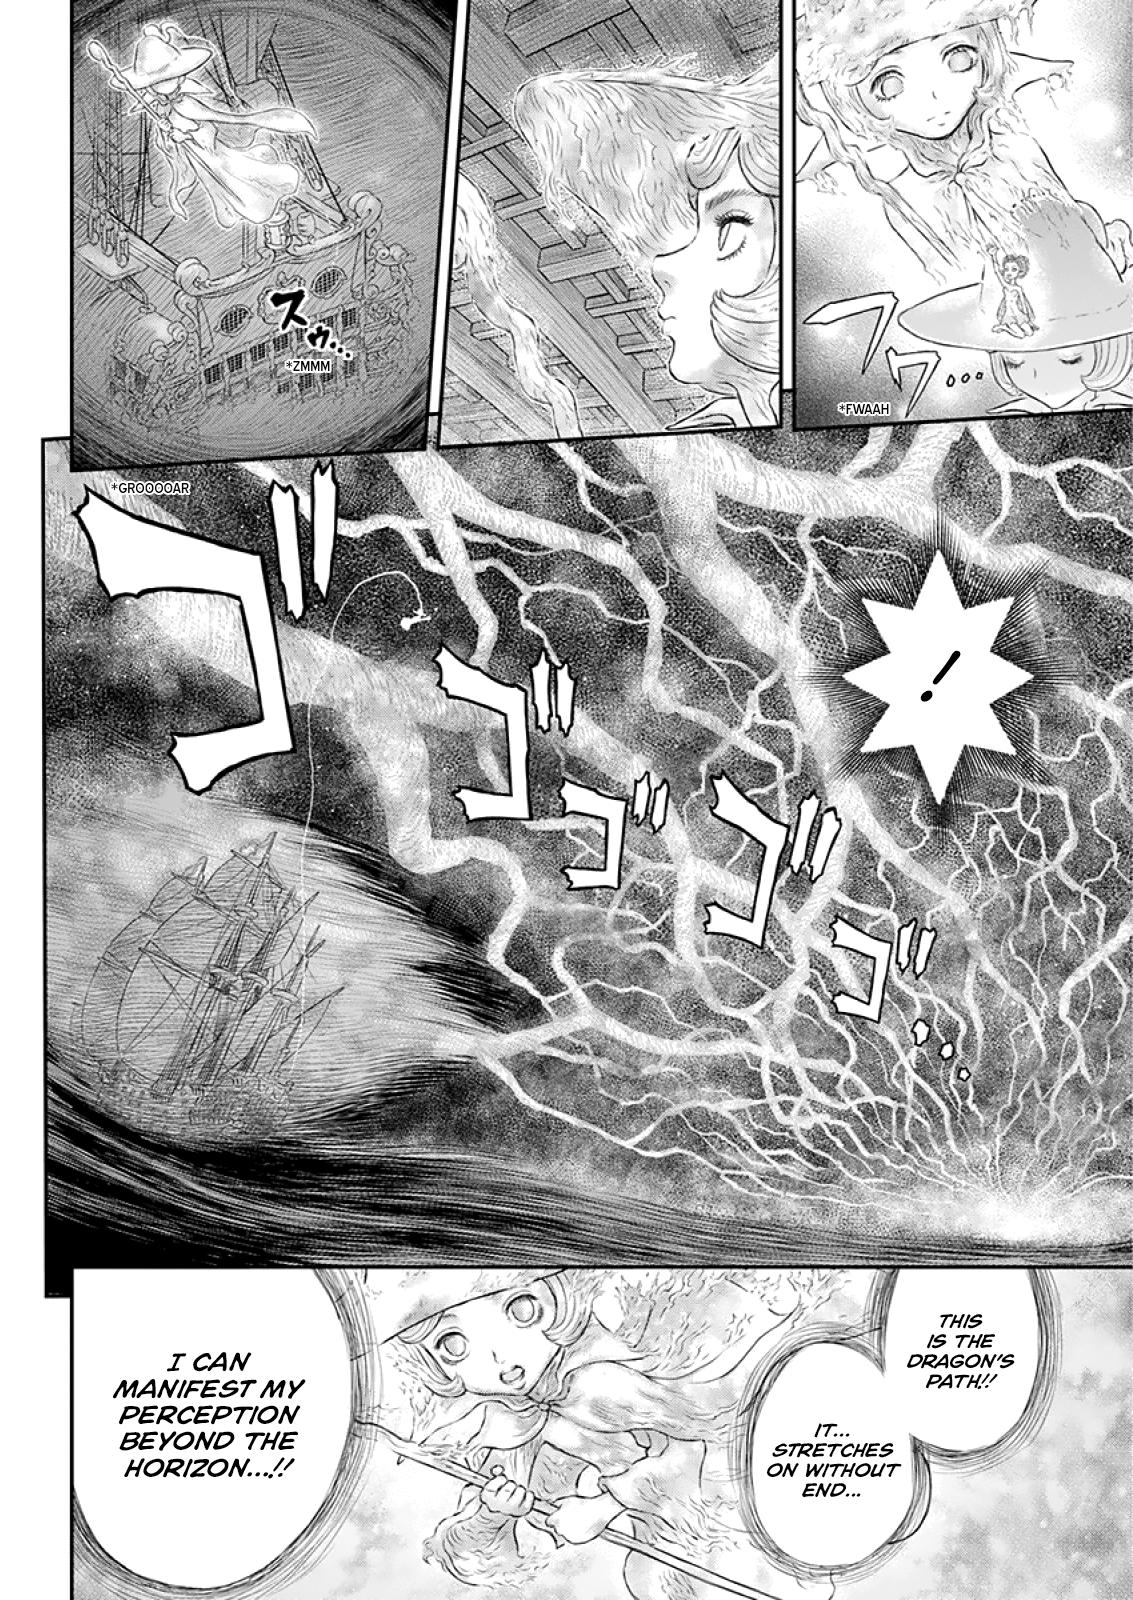 Berserk Manga Chapter 373 image 06